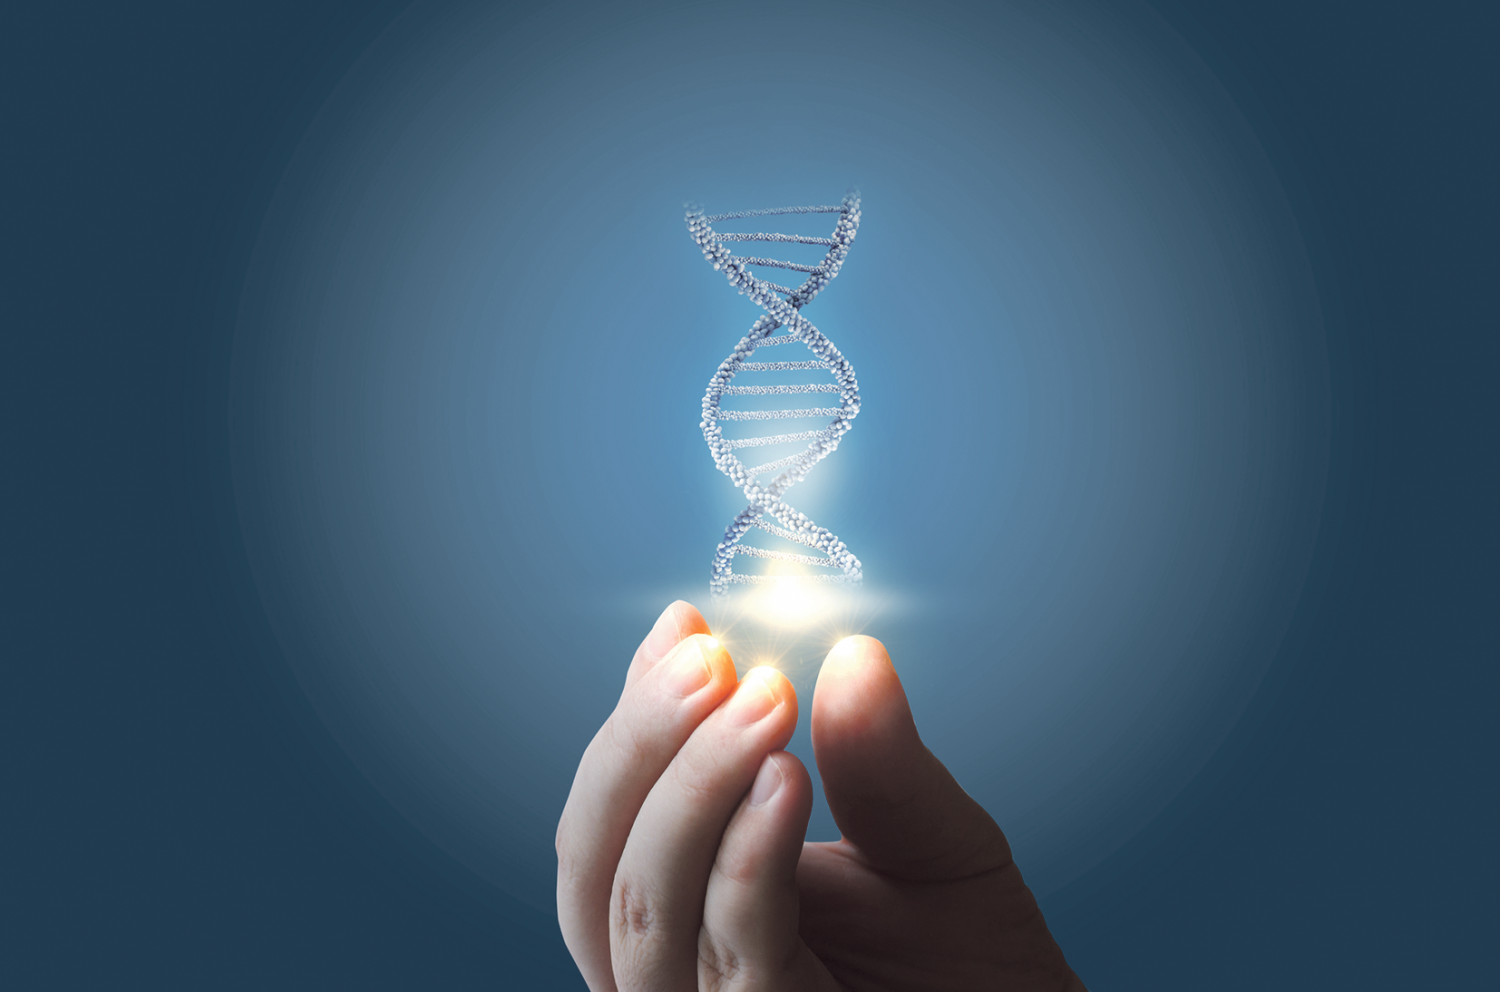 Modell einer DNA-Doppelhelix wird in einer Hand gehalten